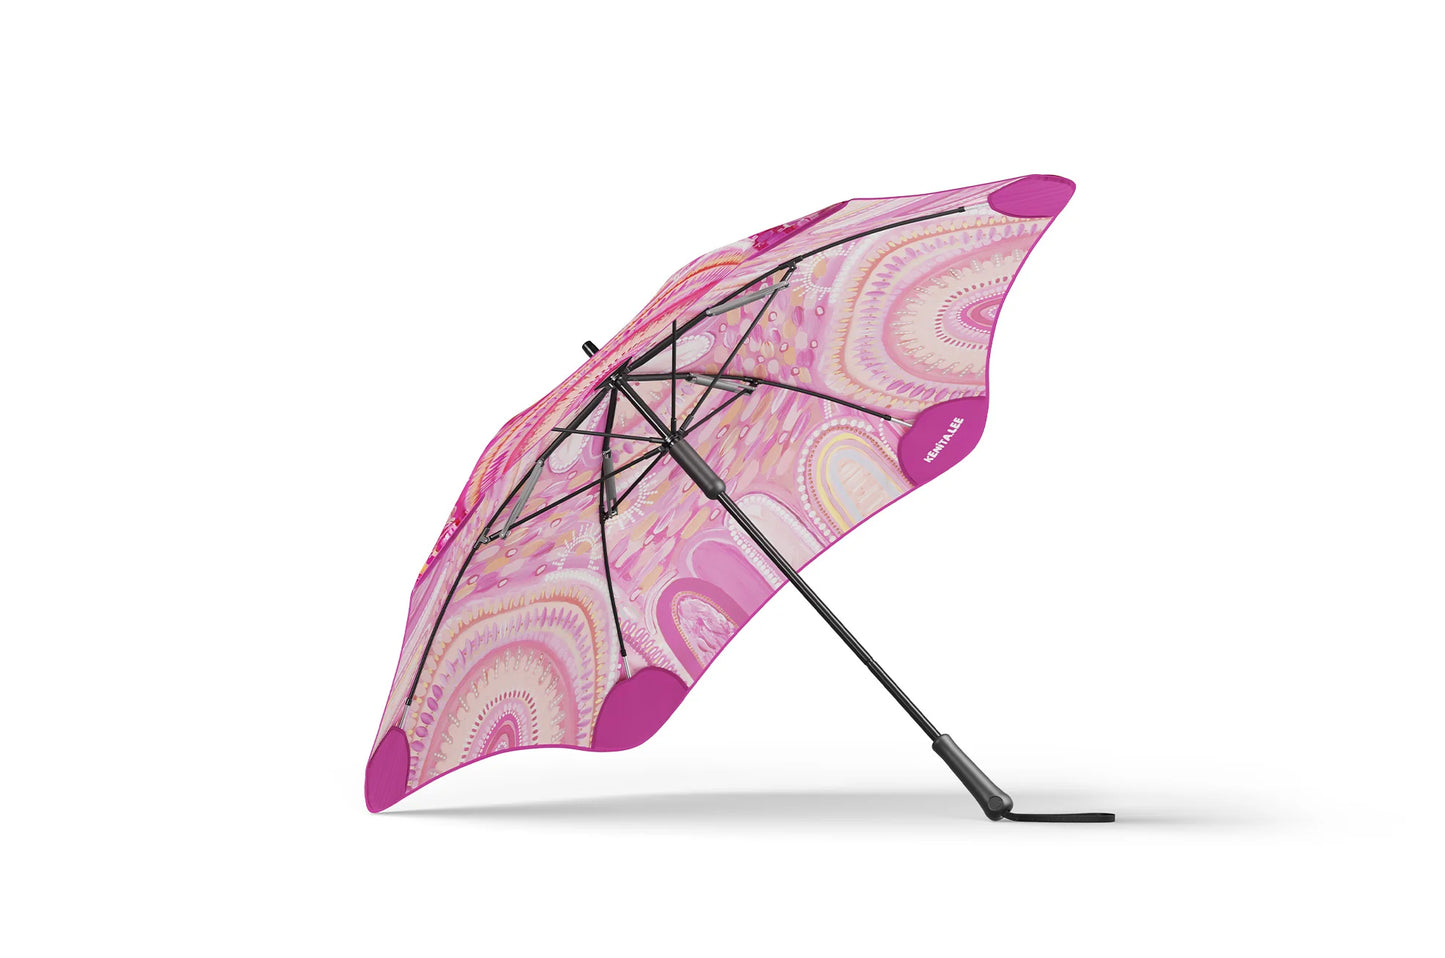 Blunt Metro Umbrella . Limited Edition . Kenita-Lee